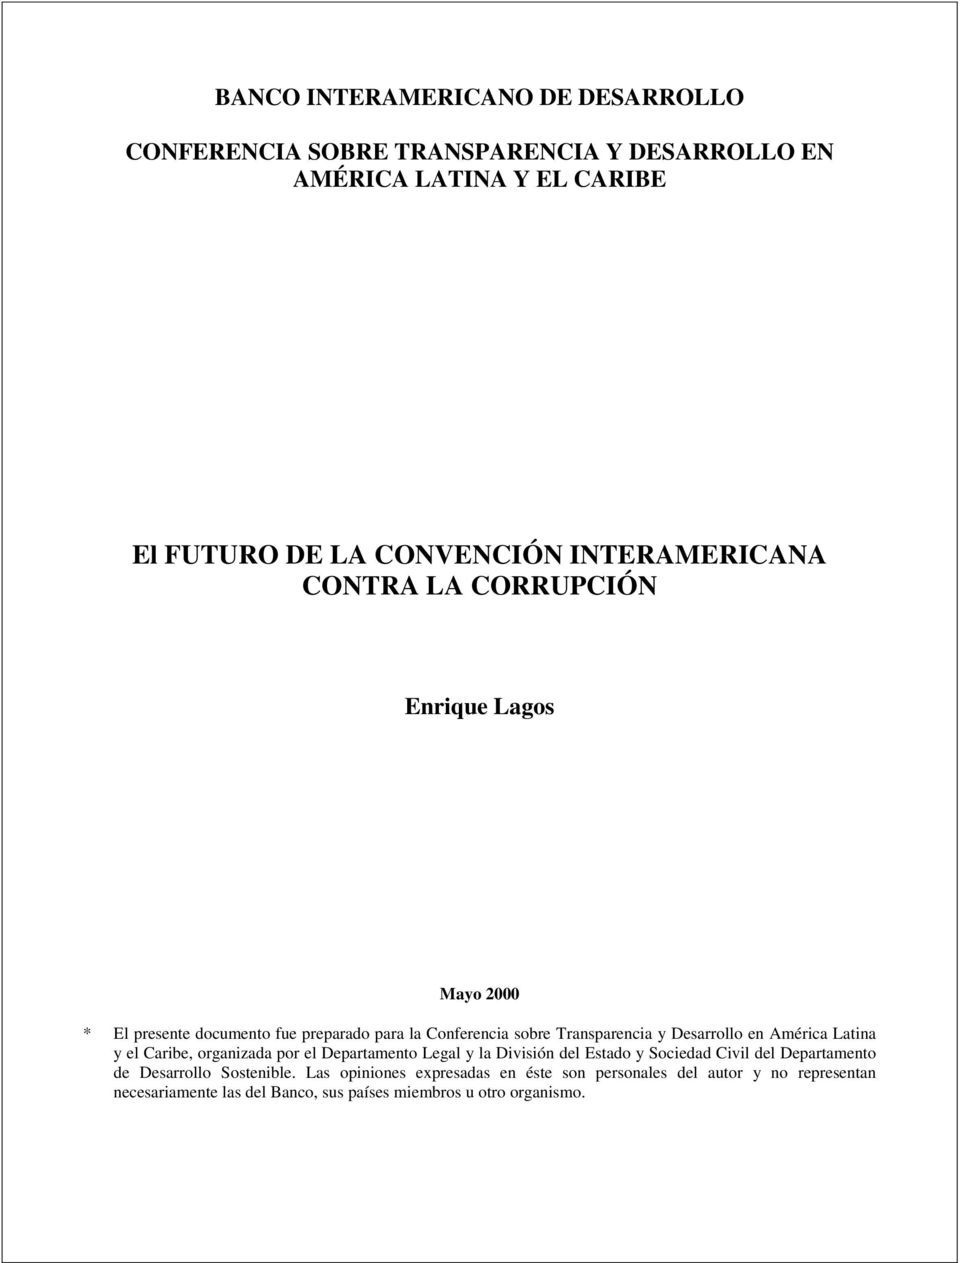 Desarrollo en América Latina y el Caribe, organizada por el Departamento Legal y la División del Estado y Sociedad Civil del Departamento de